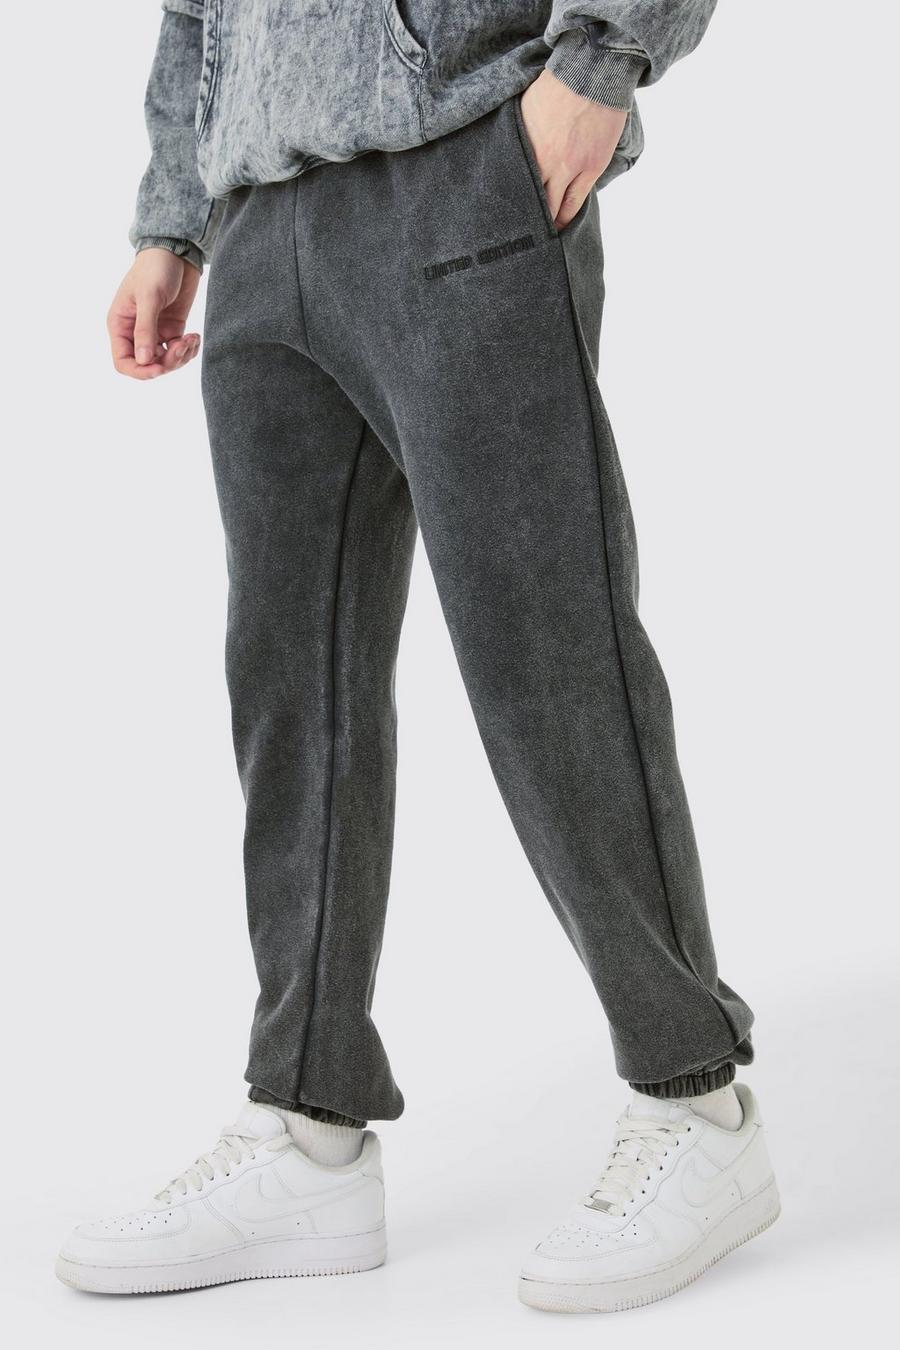 Pantaloni tuta Tall Core Fit Limited in lavaggio riciclato, Charcoal